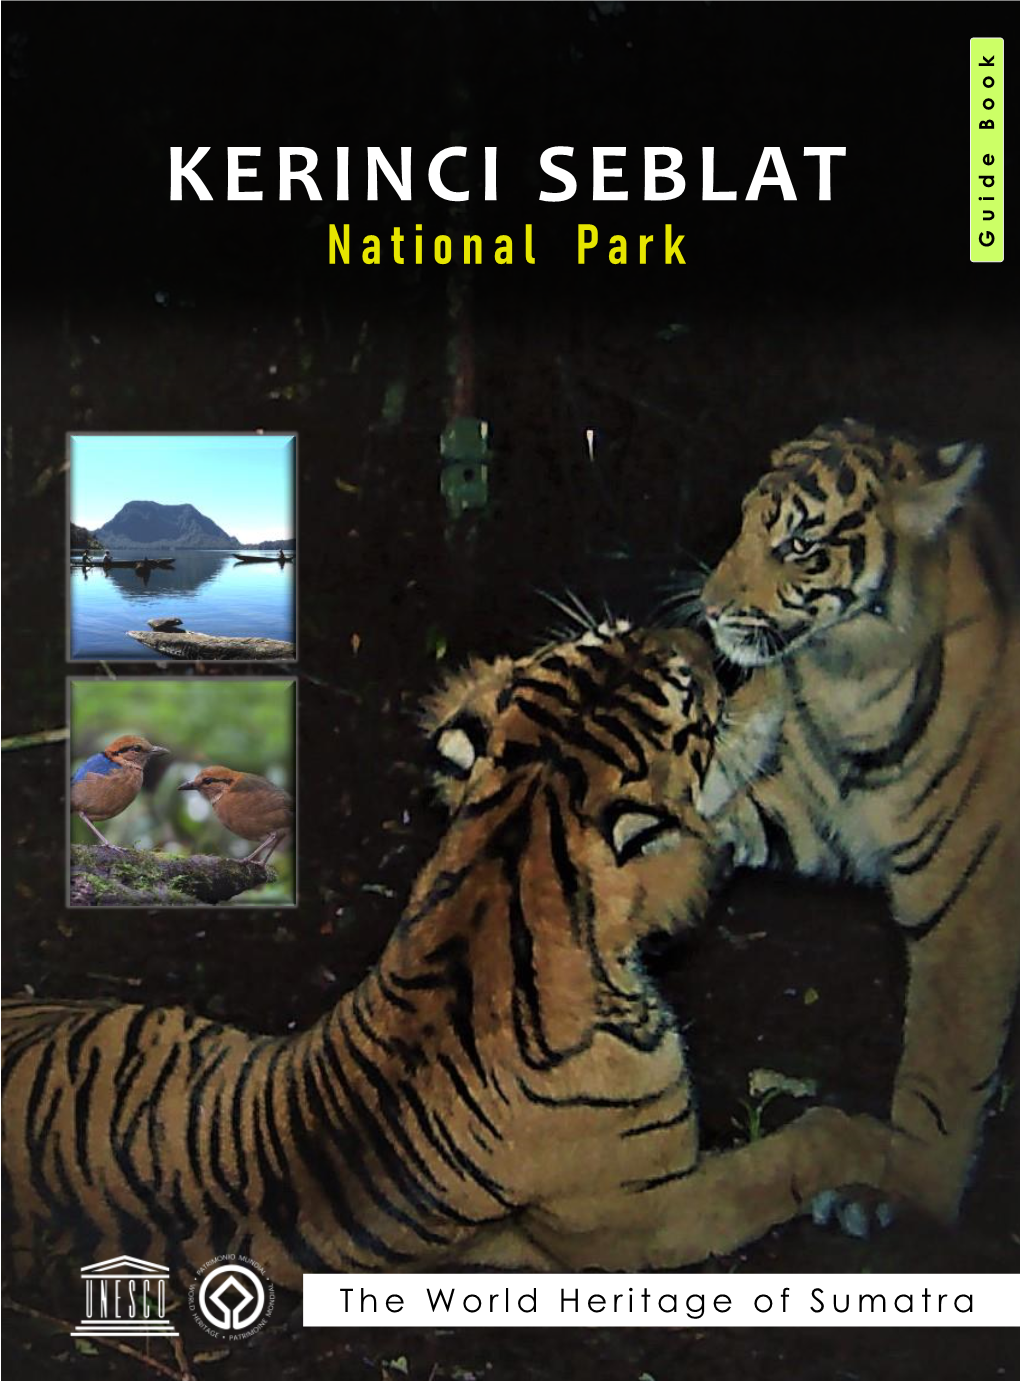 Guide Book Kerinci Seblat National Park